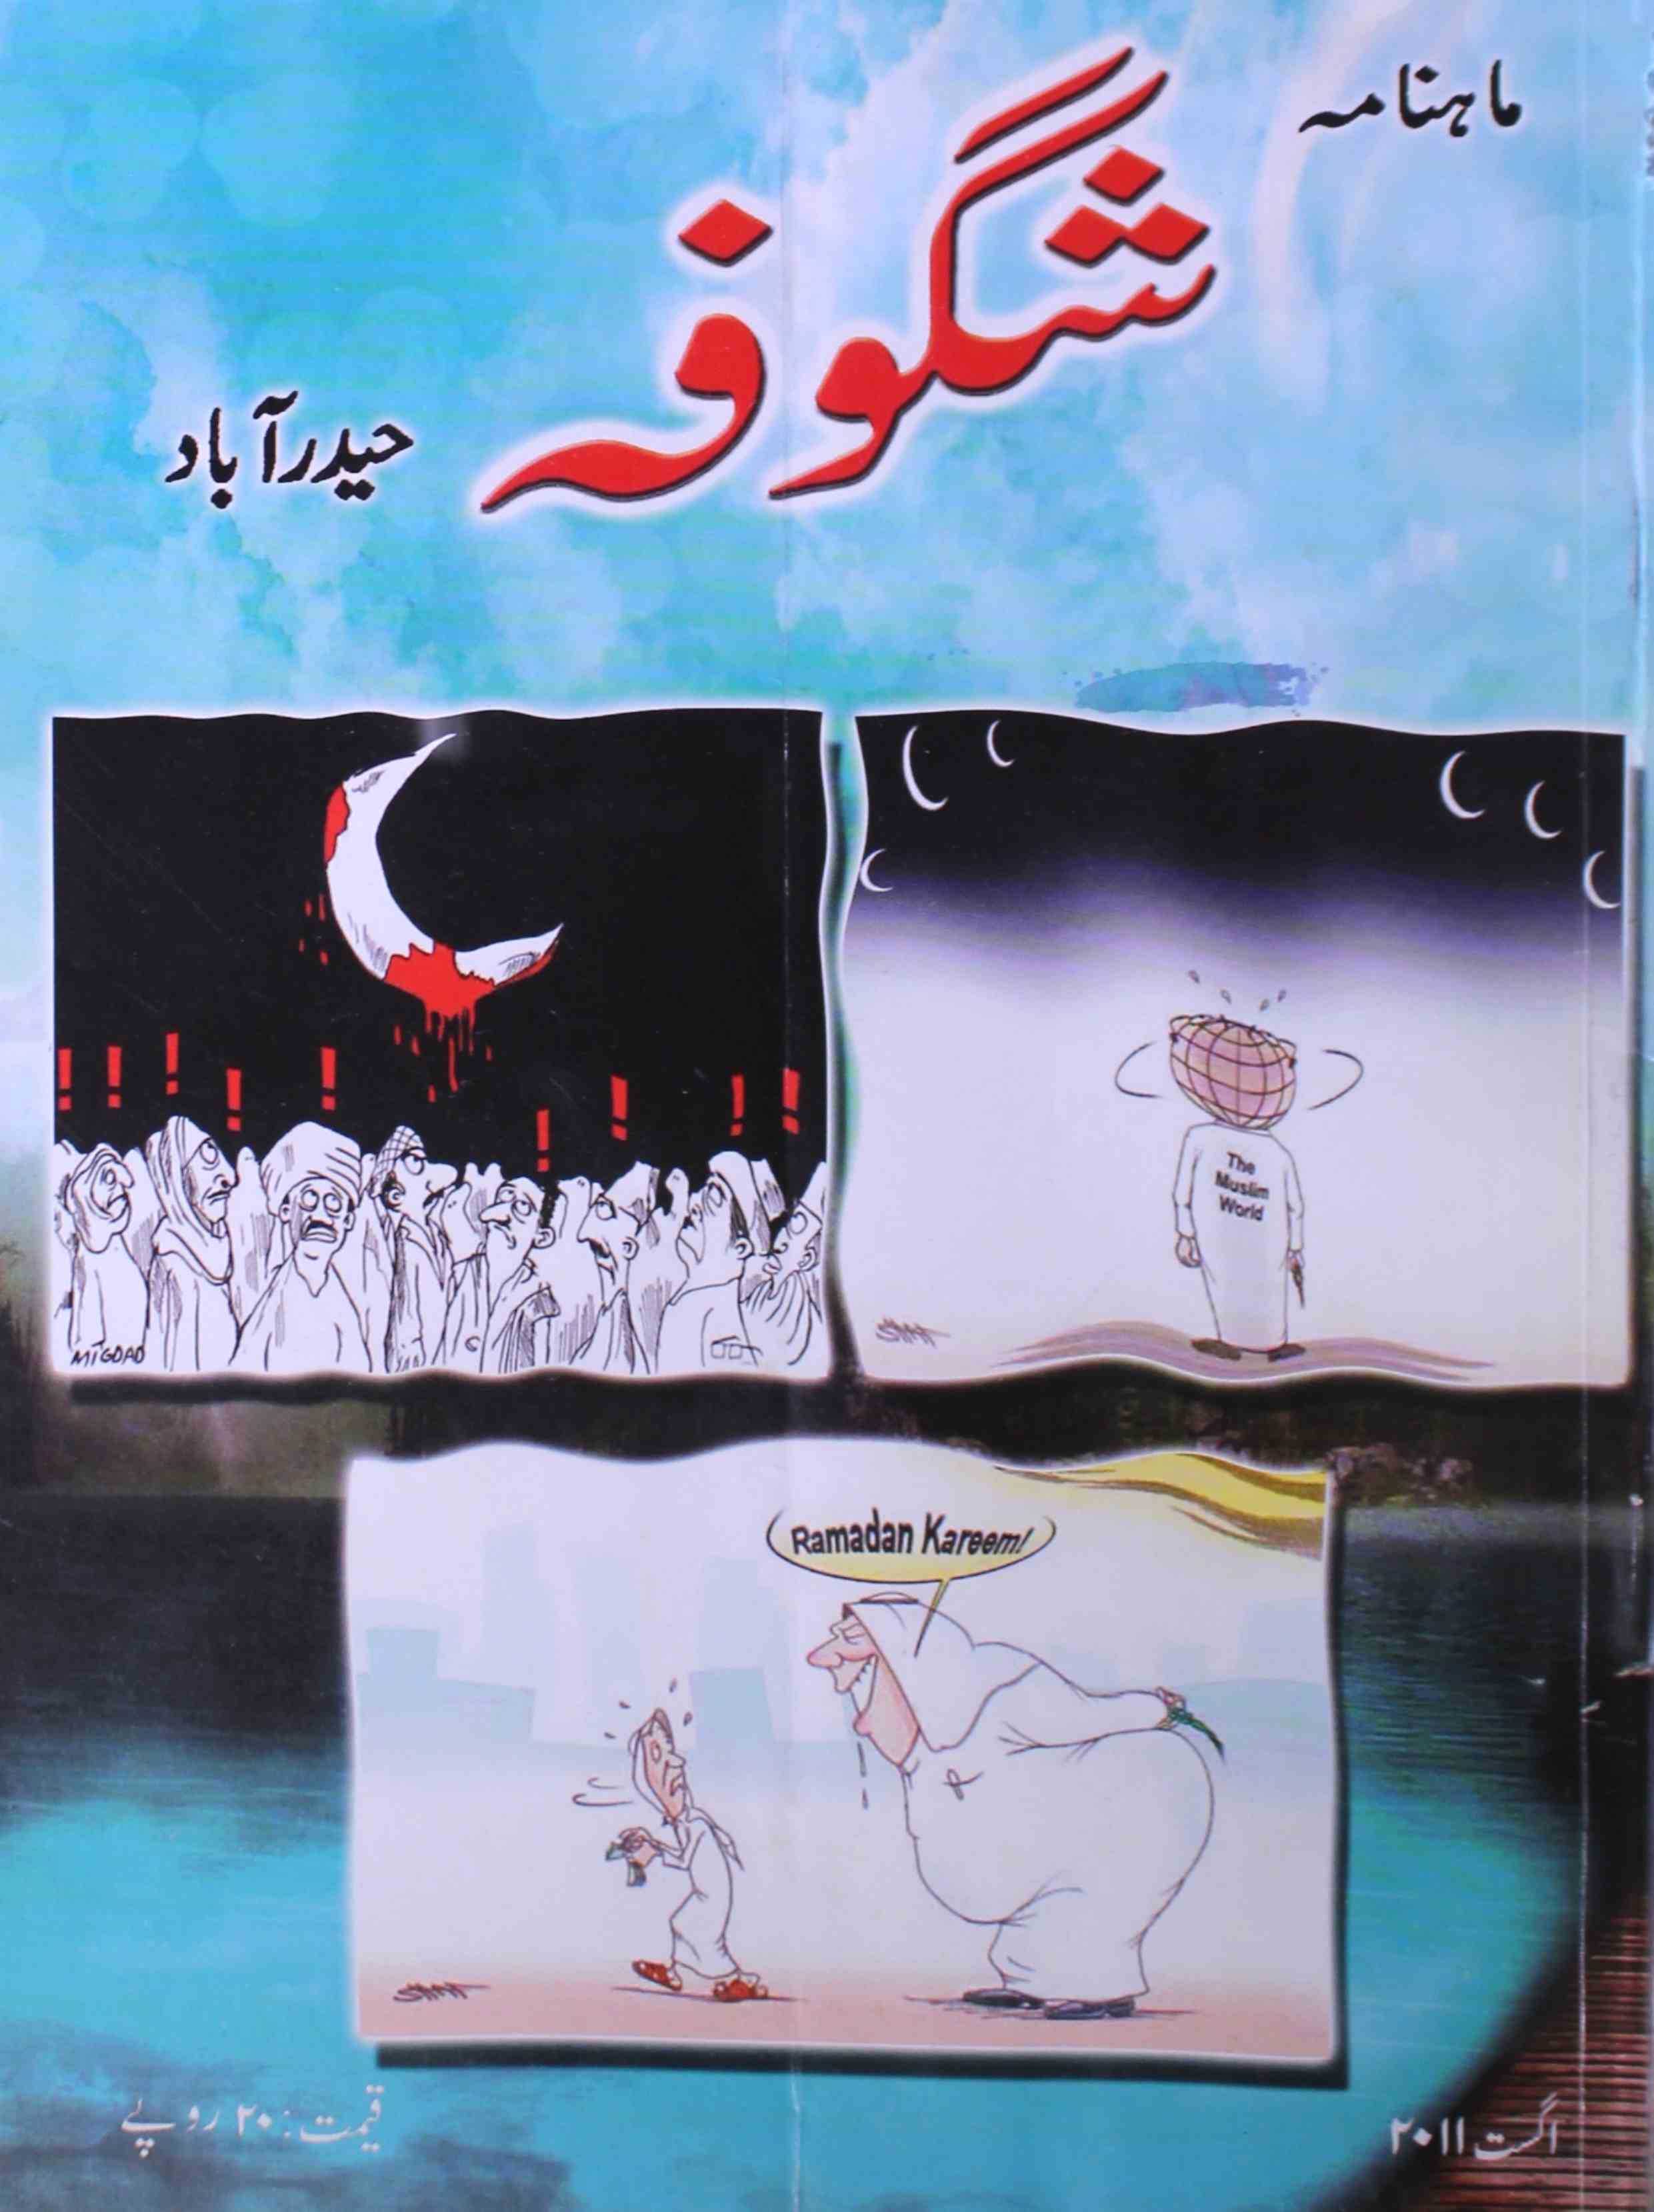 shagoofa-shumaara-number-008-syed-mustafa-kamal-magazines